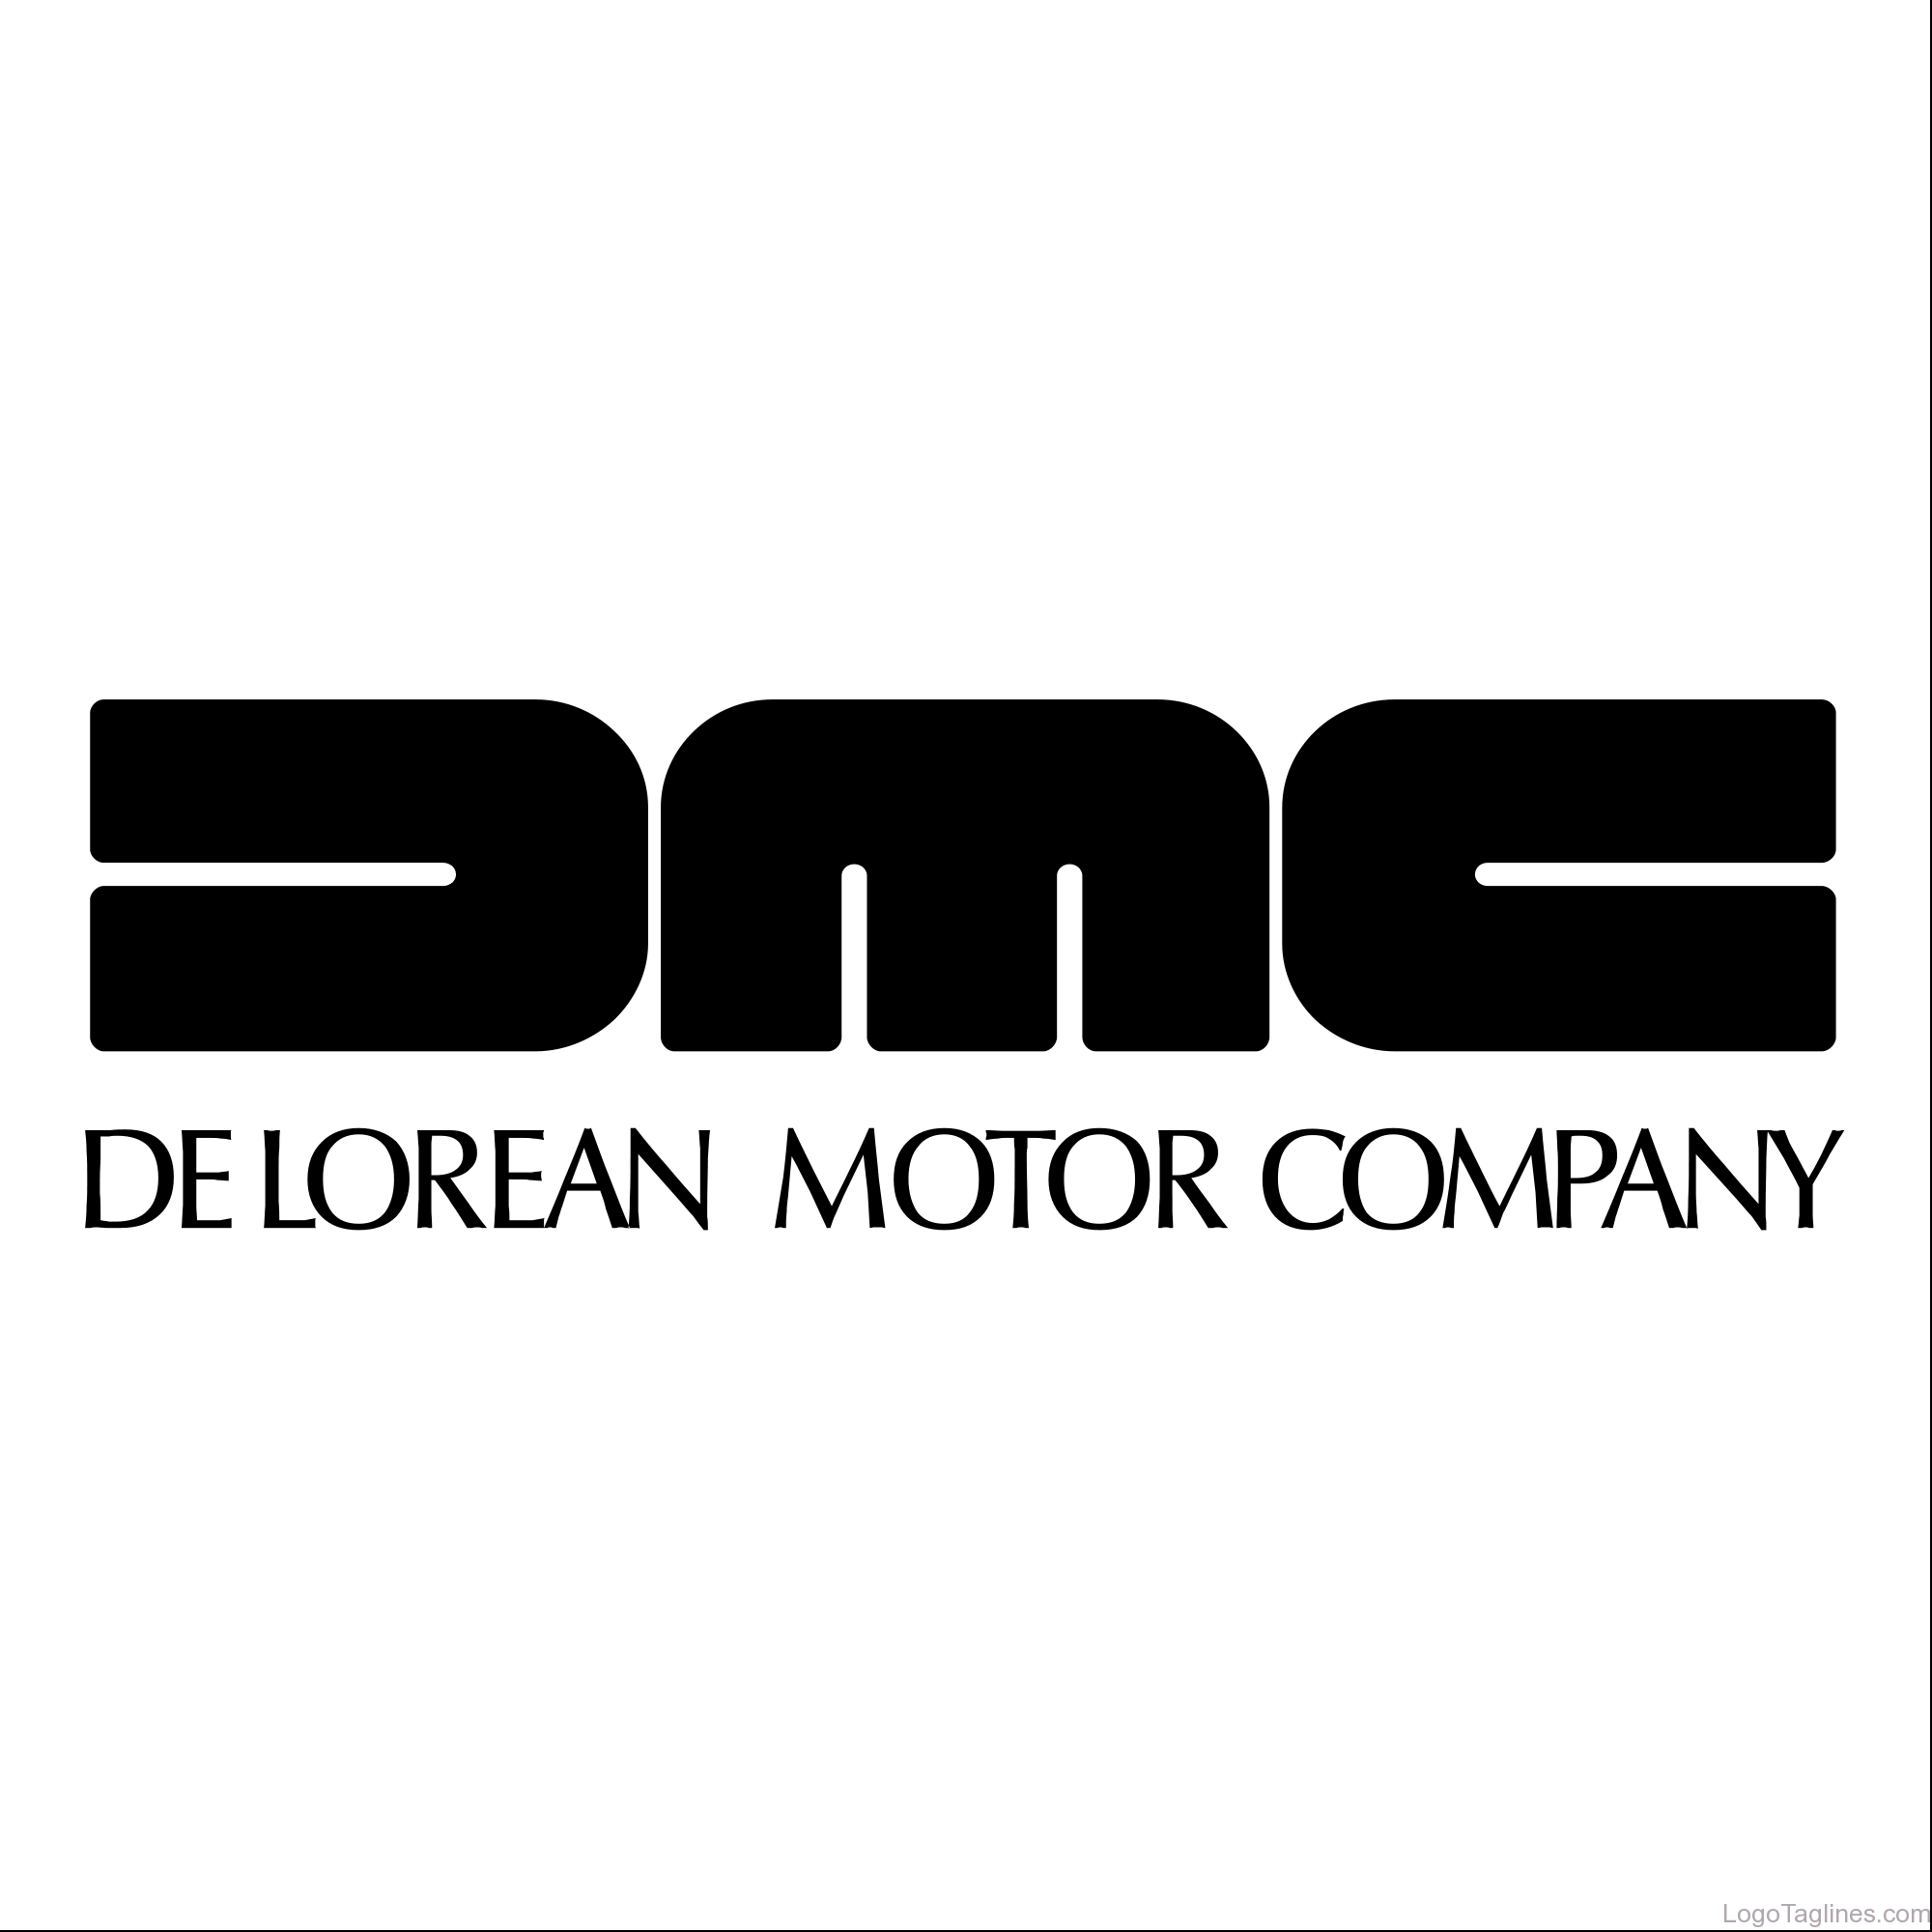 DMC DeLorean Logo - The DeLorean Motor Company- DMC Logo and Tagline